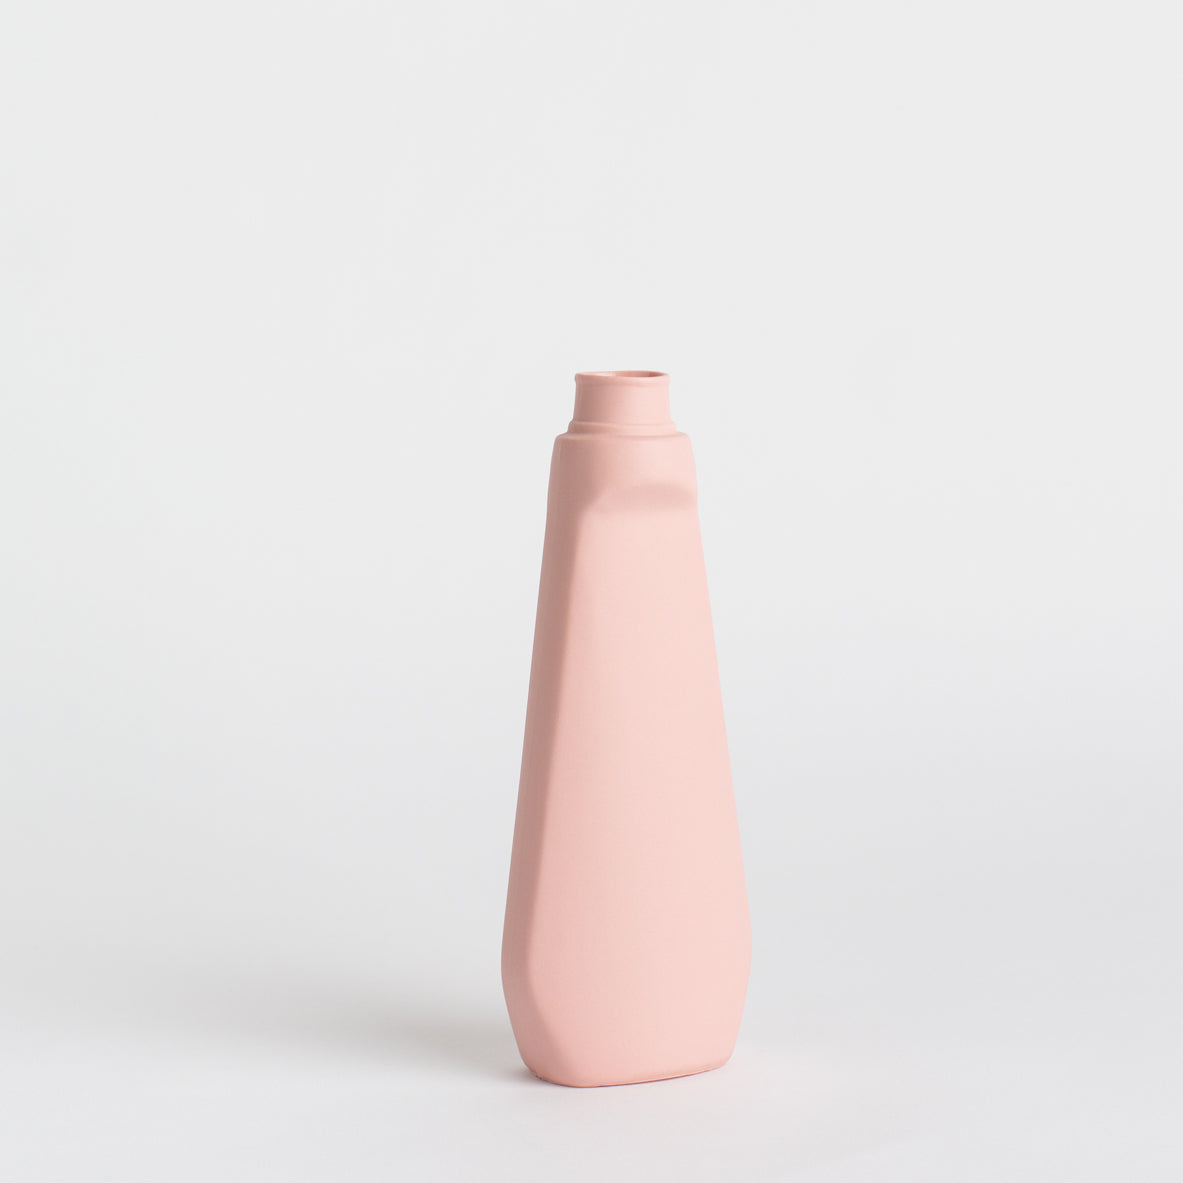 Load image into Gallery viewer, Porcelain Bottle Vase #4 - pink
